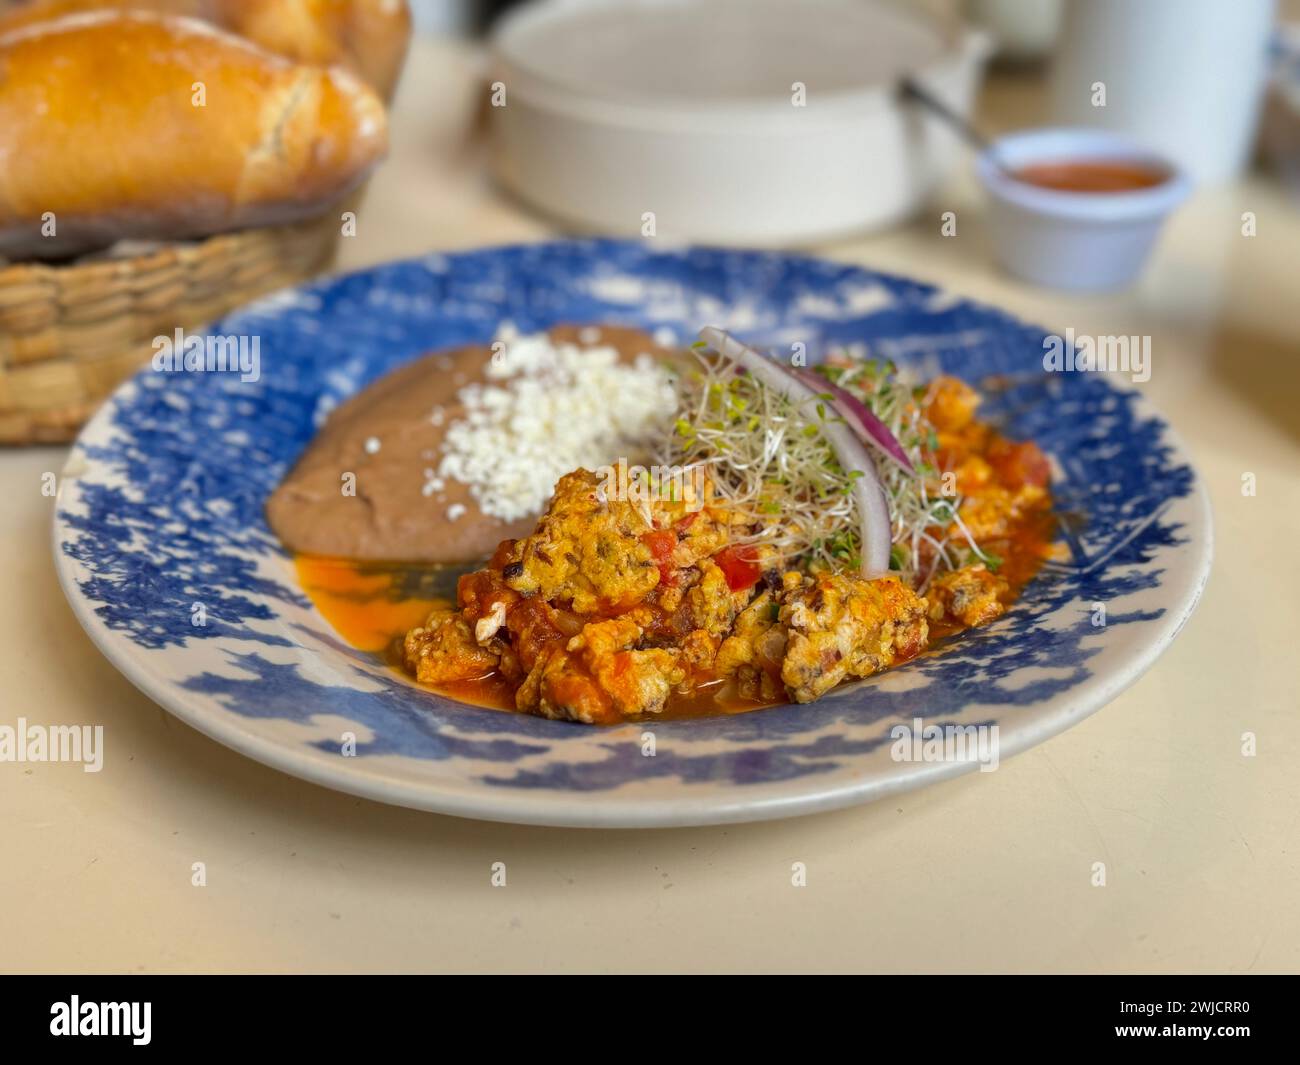 Nahaufnahme eines herzhaften mexikanischen Frühstücksplattes mit Rührei mit Carne Seca, Tomaten, Zwiebeln und einer Seite mit frisch gebackenen Bohnen, garniert mit Käse Stockfoto